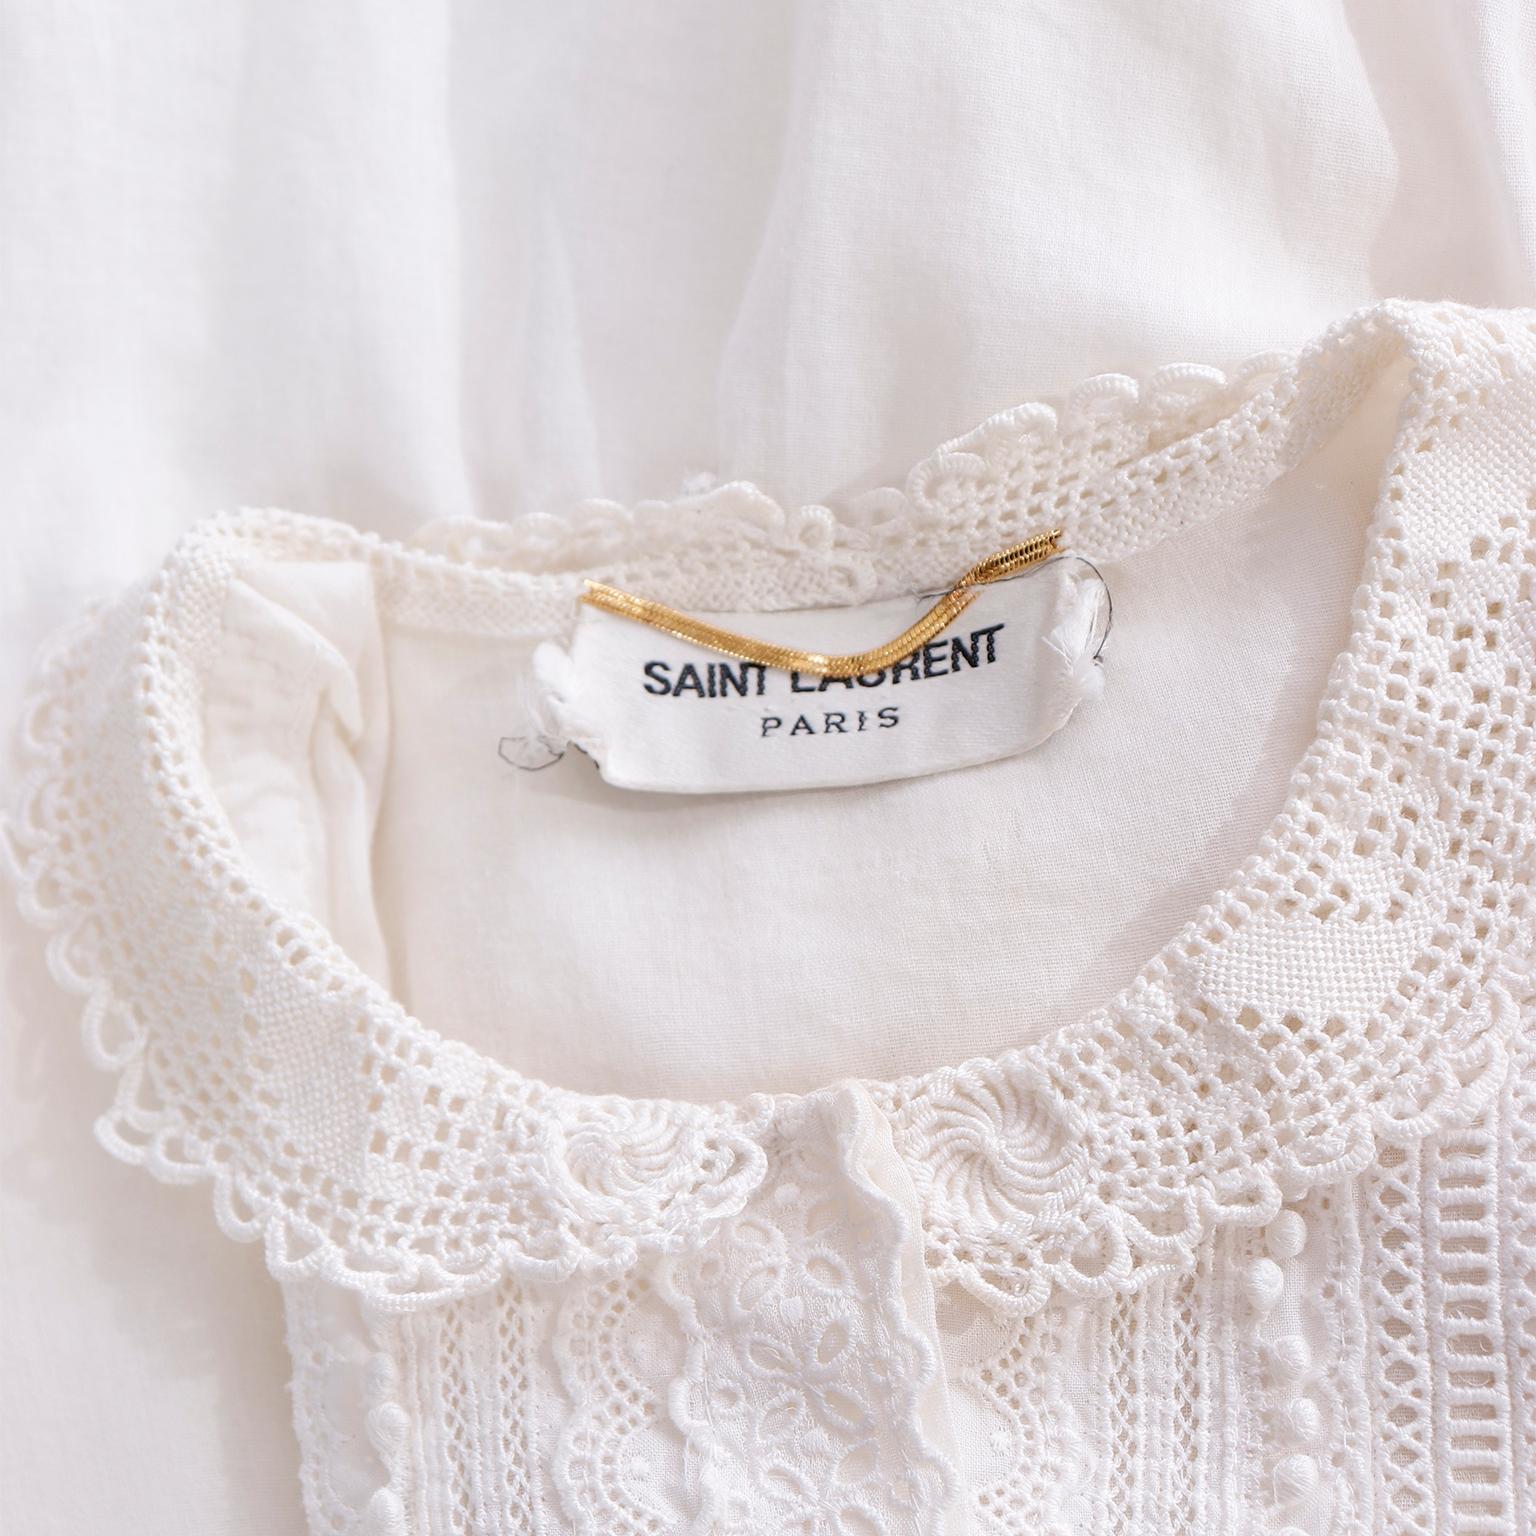 Saint Laurent Paris White Cotton Voile Babydoll Blouse Top w Fine Lace Trim For Sale 4